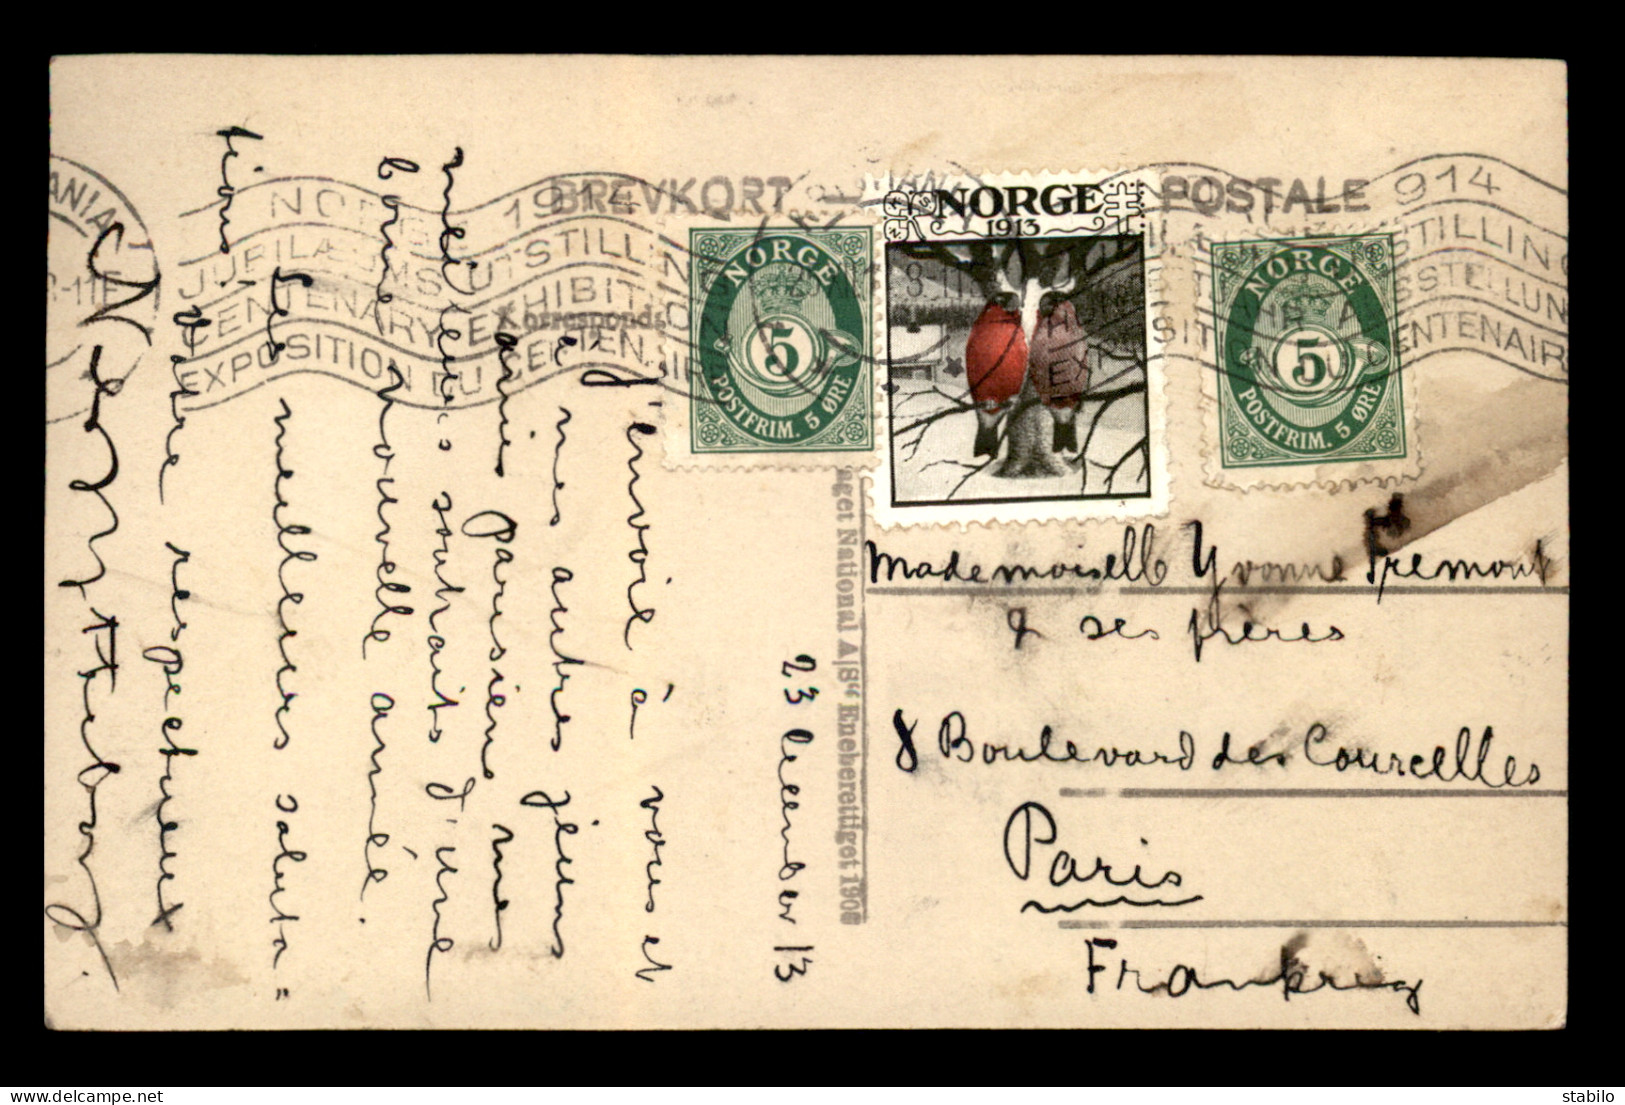 NORVEGE - OBLITERATION EXPOSITION DU CENTENAIRE 1914 DU 23.12.1913 AVEC VIGNETTE NORGE 1913 SUR CARTE STEREO - Covers & Documents